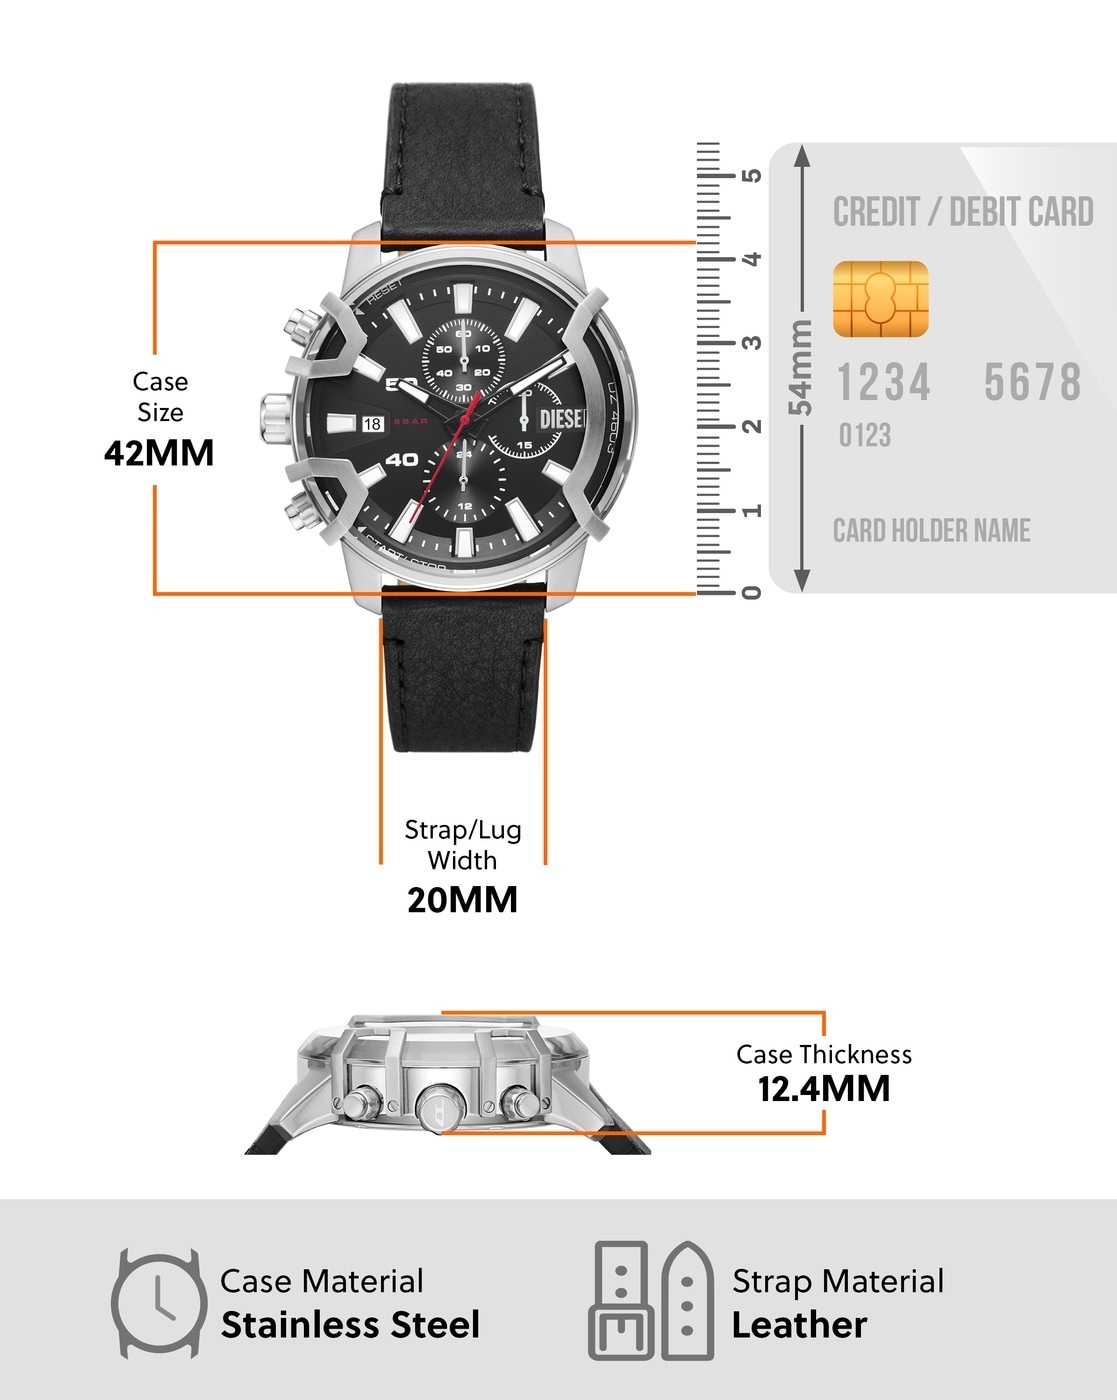 Buy Black Watches for Men by DIESEL Online